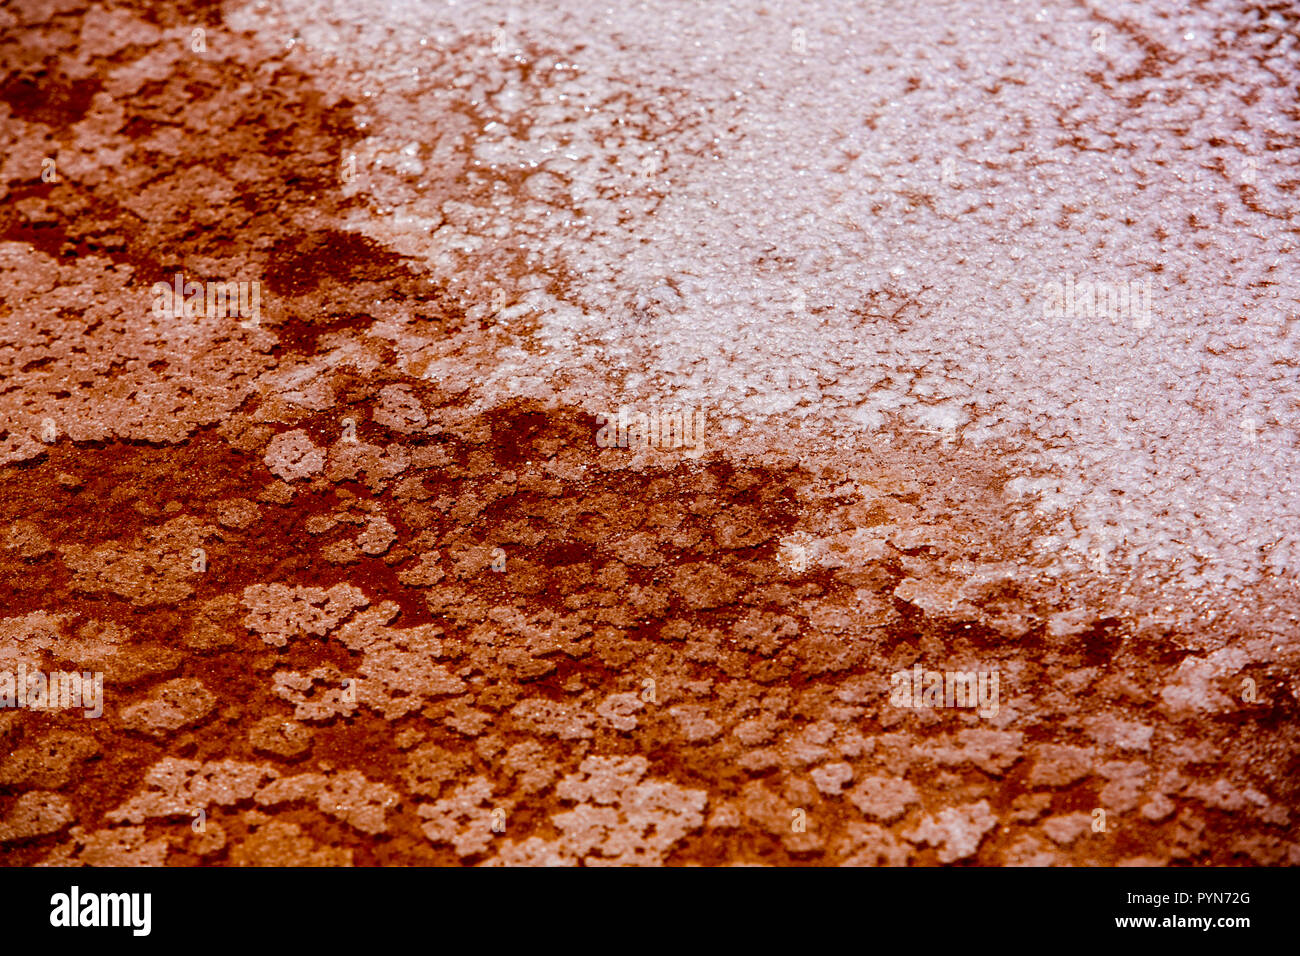 Nahaufnahme eines Salzbeckens in Rot-Oranger Farbe mit Salzkristallen - abstrakte Formen -aufgenommen in einem Salzbecken in Peru, Südamerika Stock Photo